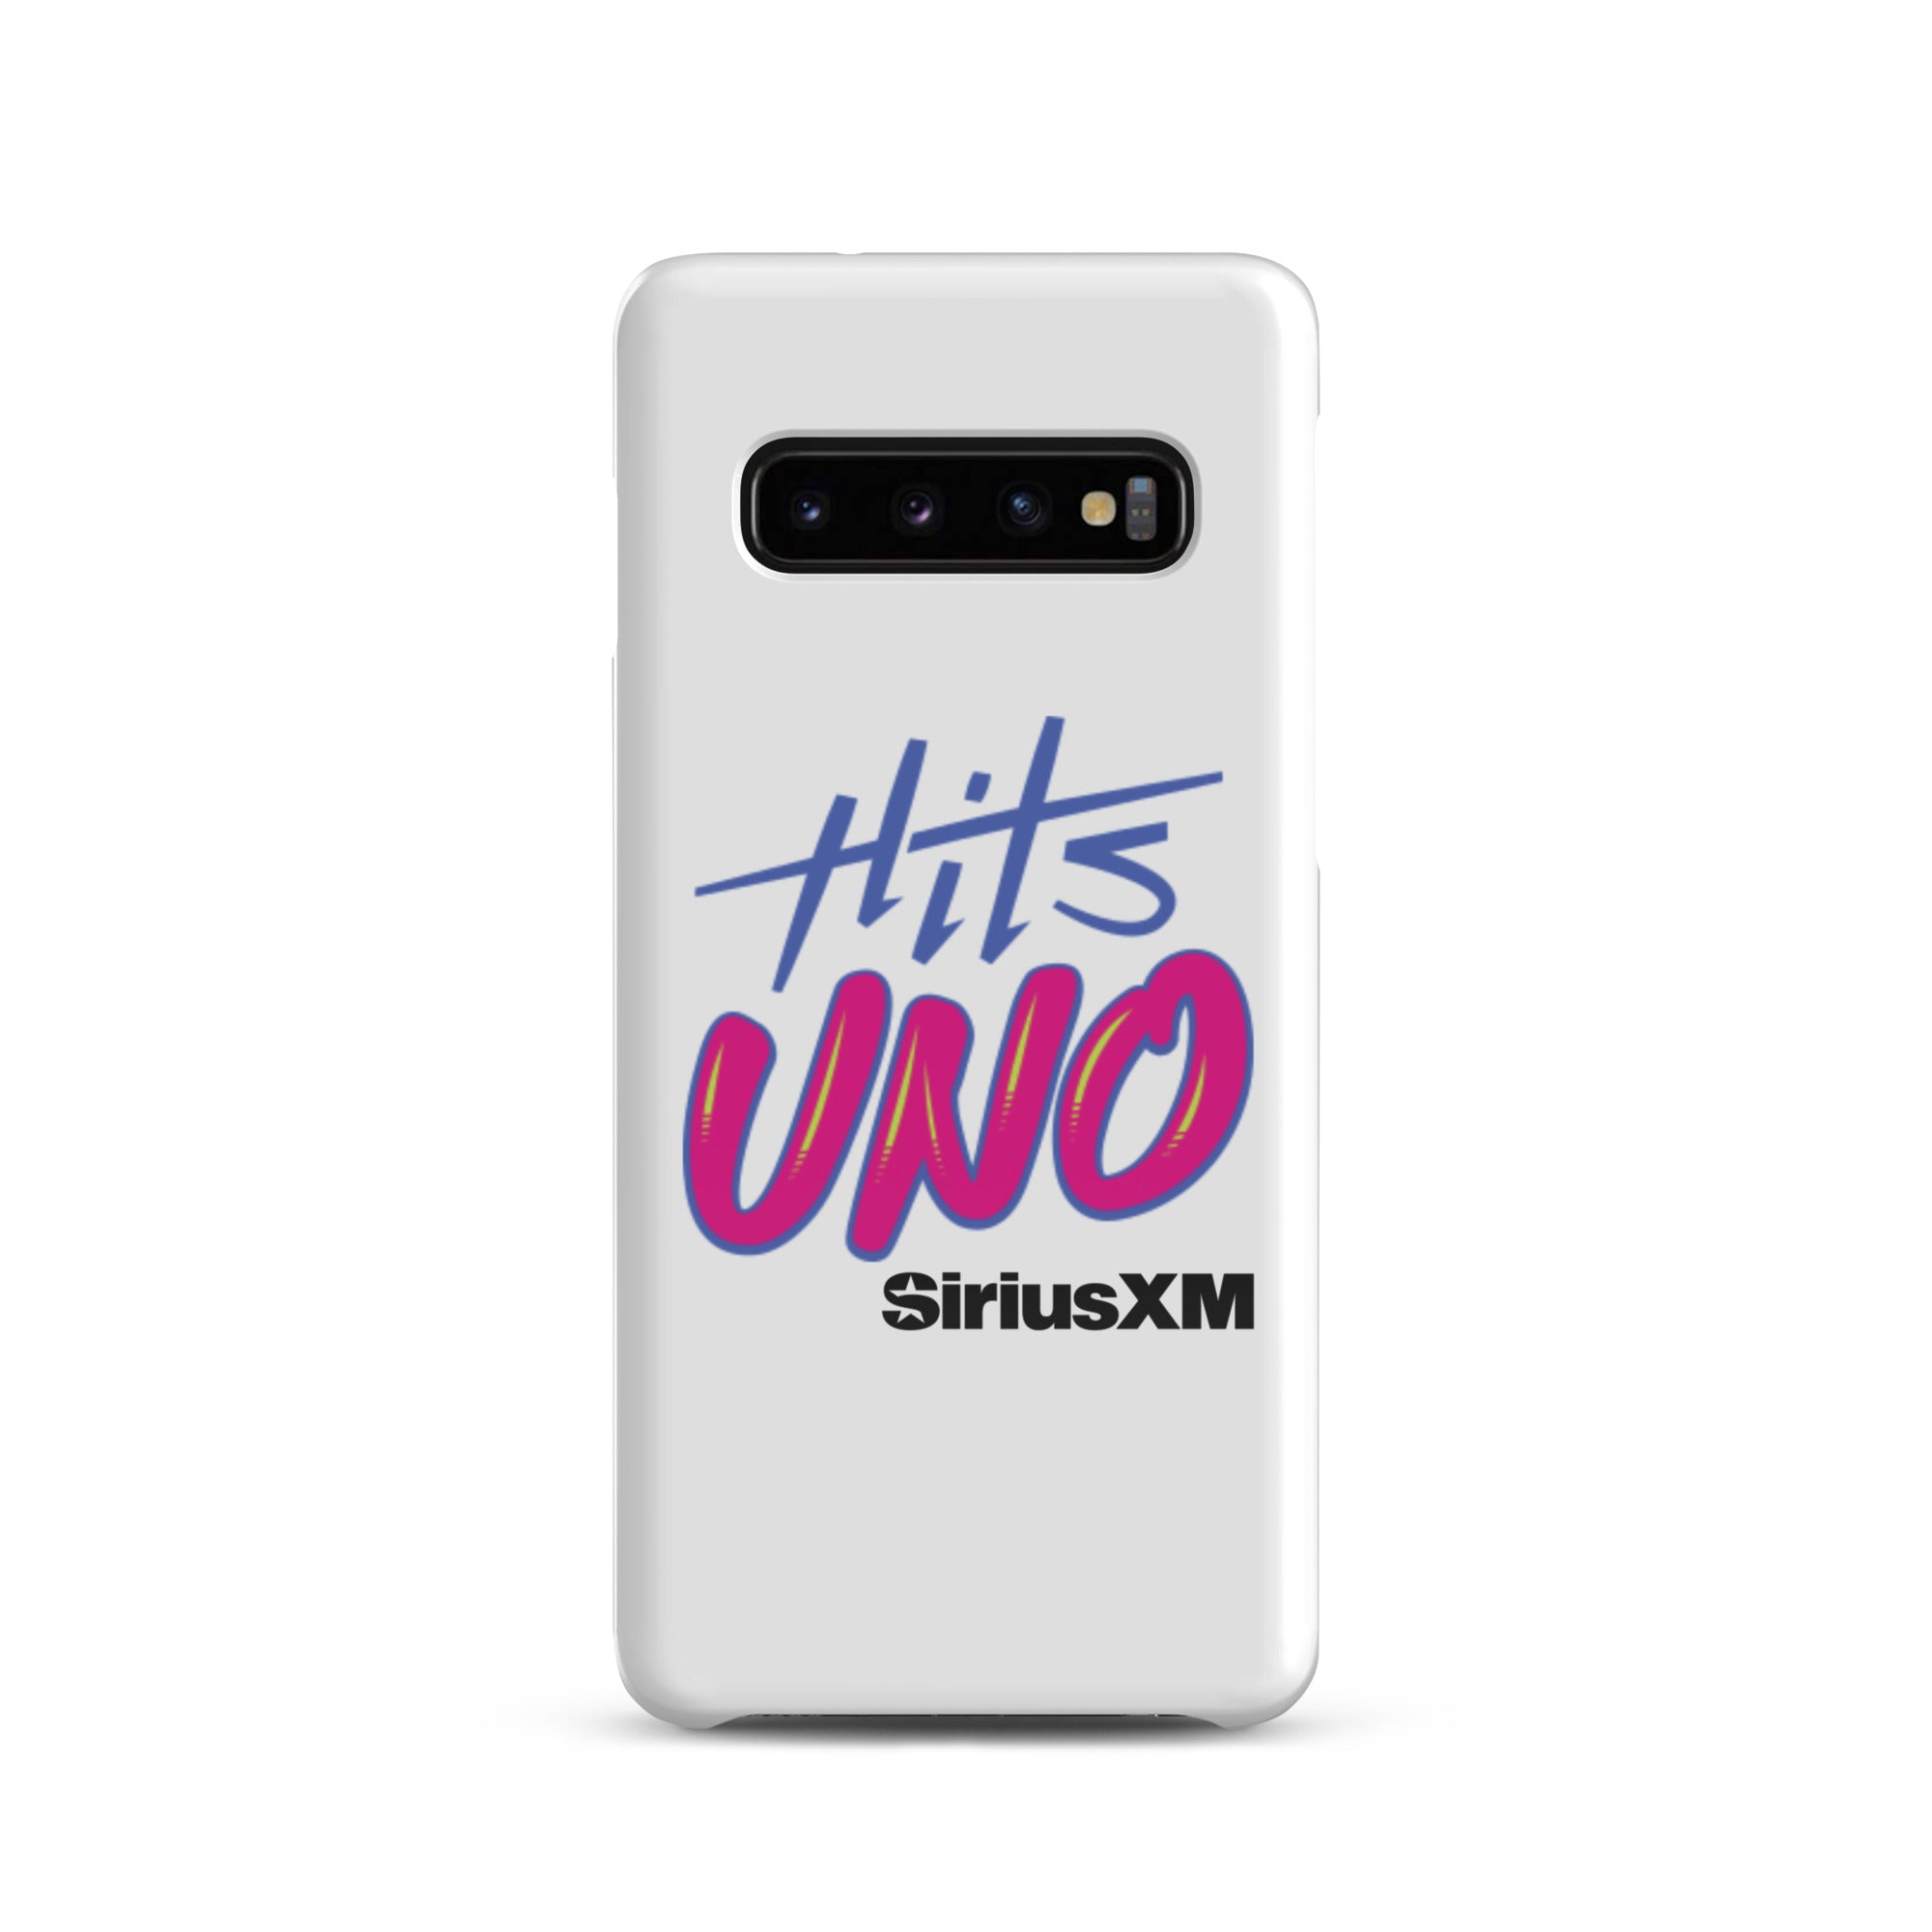 Hits Uno: Samsung® Snap Case